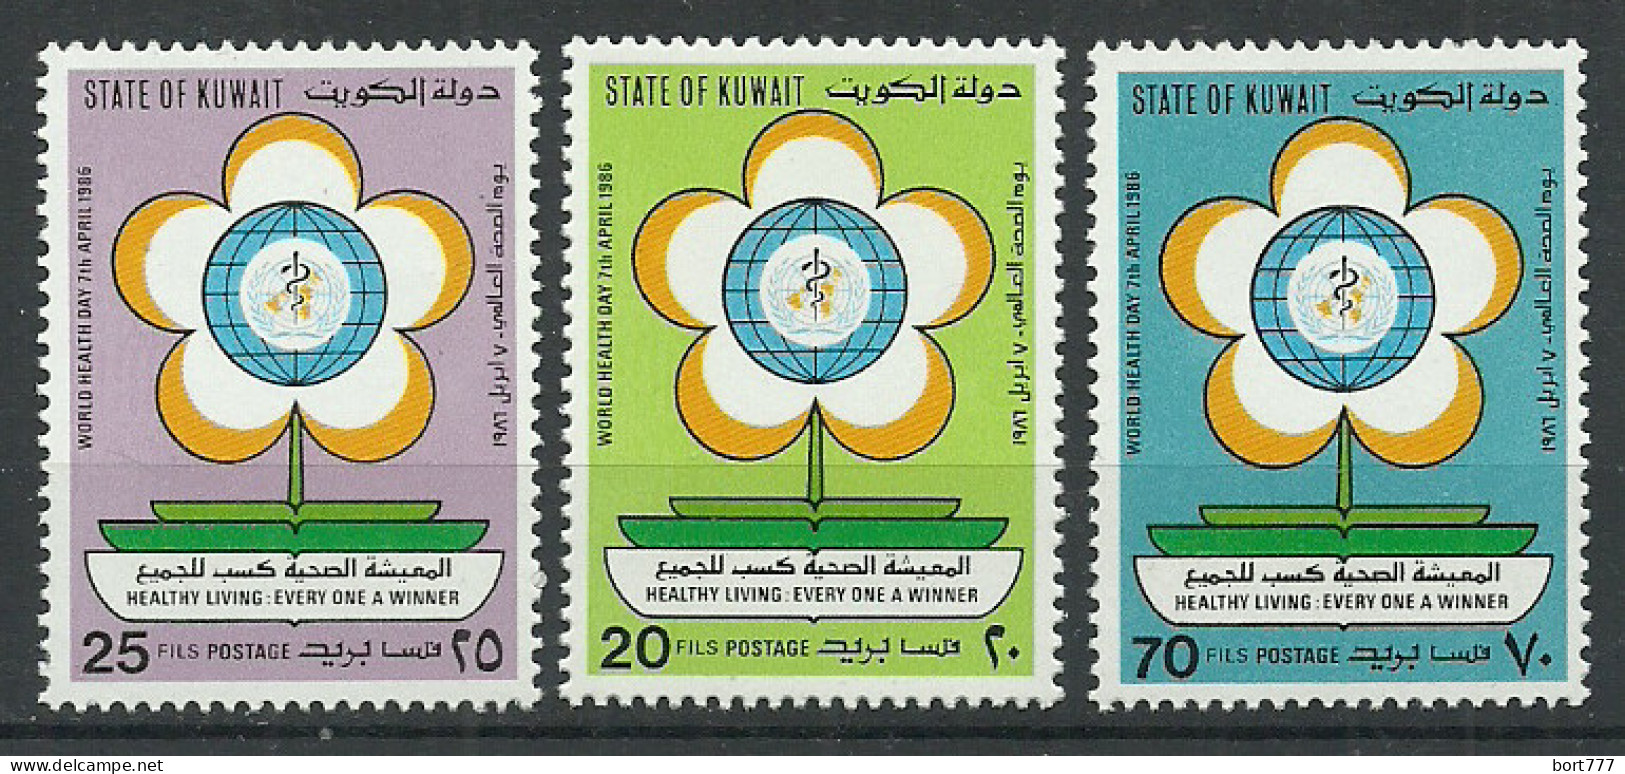 Kuwait 1986 Year, Mint Stamps MNH (** )  Mi # 1102-04 - Kuwait